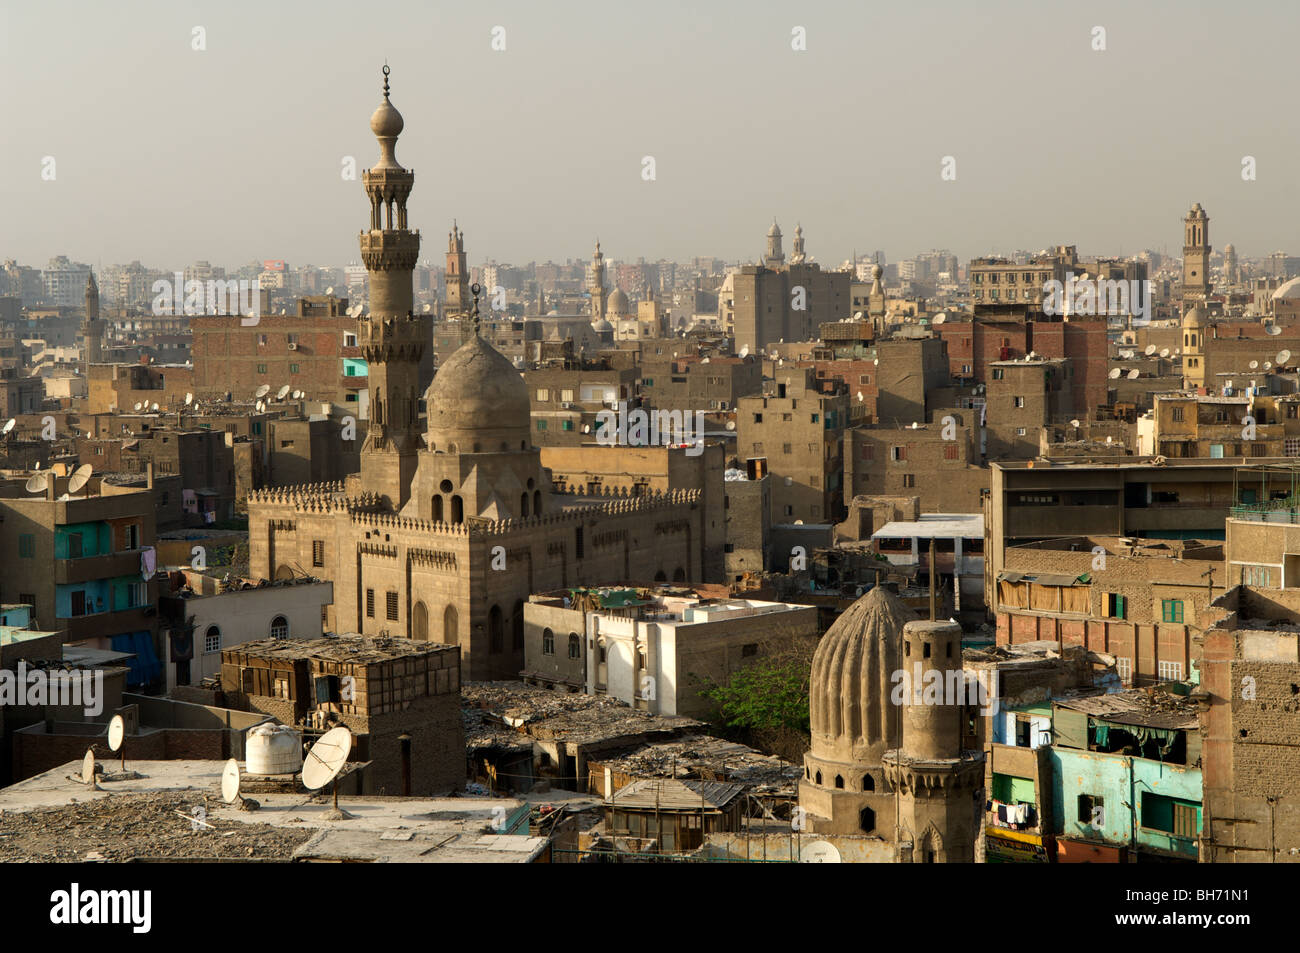 Die El-Azhar-Moschee (die blühende), die bietet einige der schönsten Ausblicke über die Altstadt von Kairo aus dem Minarett. Stockfoto